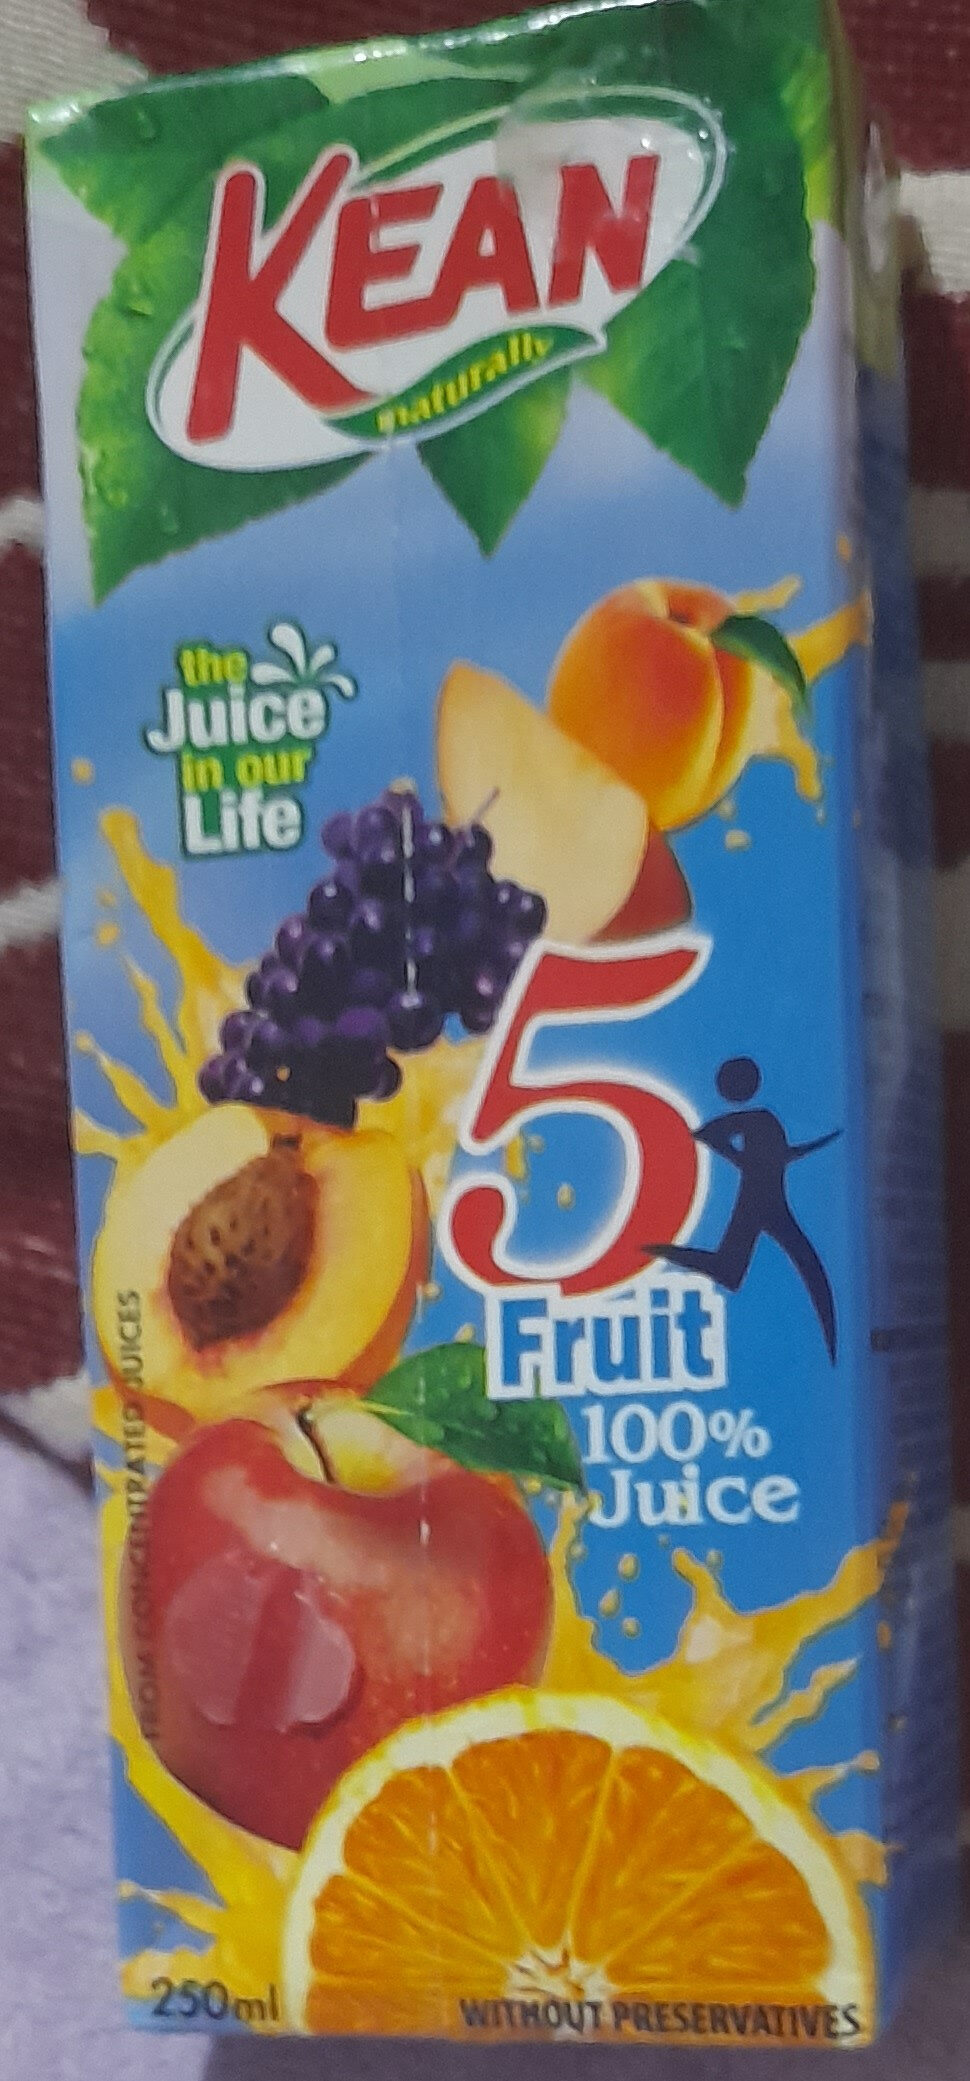 Kean juice 5 fruits - Προϊόν - en